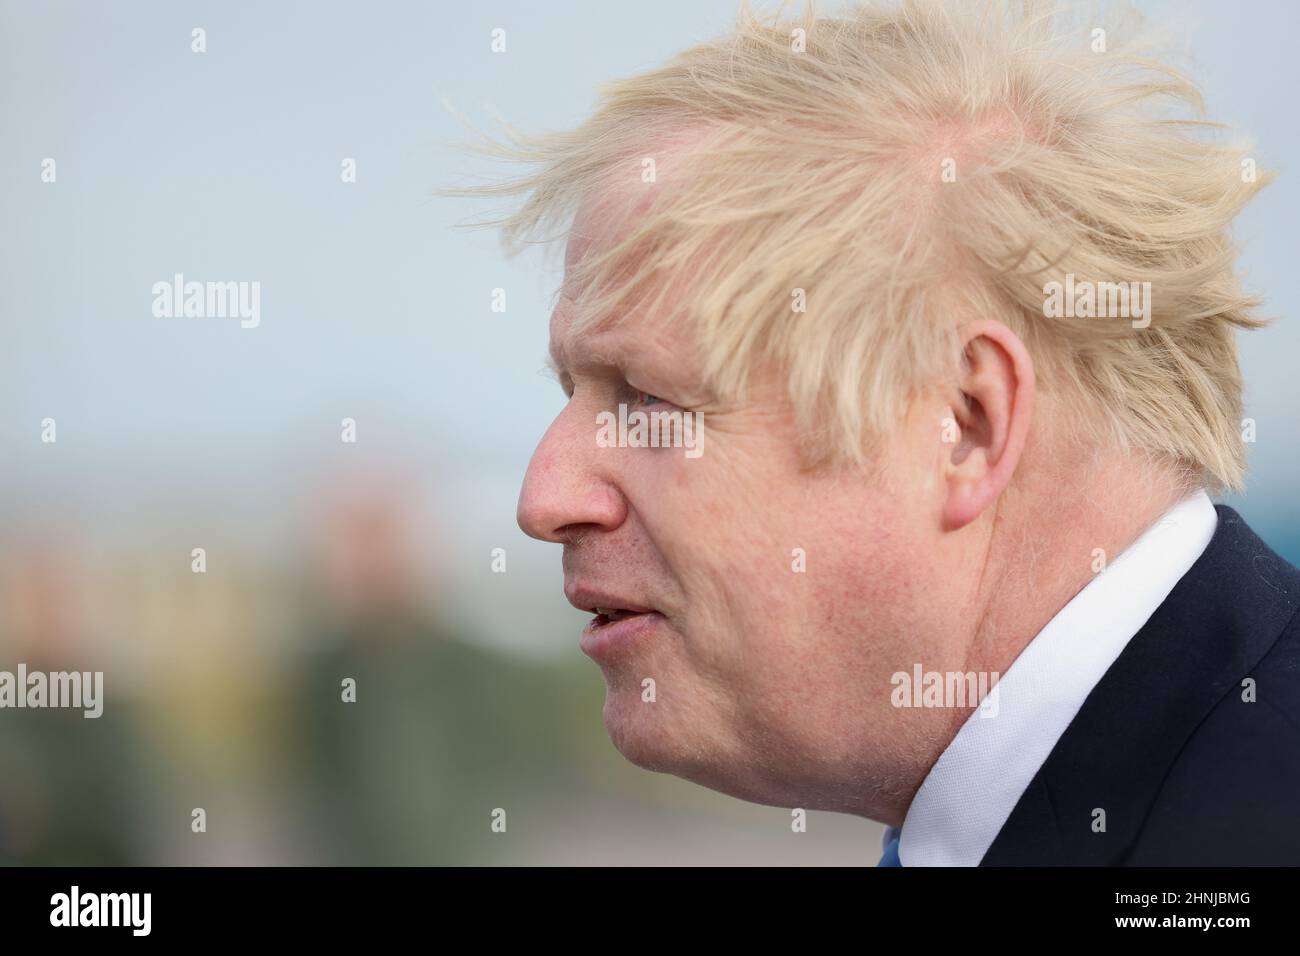 Il primo Ministro Boris Johnson durante la sua visita alla Royal Air Force Station di Waddington nel Lincolnshire dove ha incontrato personale militare. Data immagine: Giovedì 17 febbraio 2022. Foto Stock